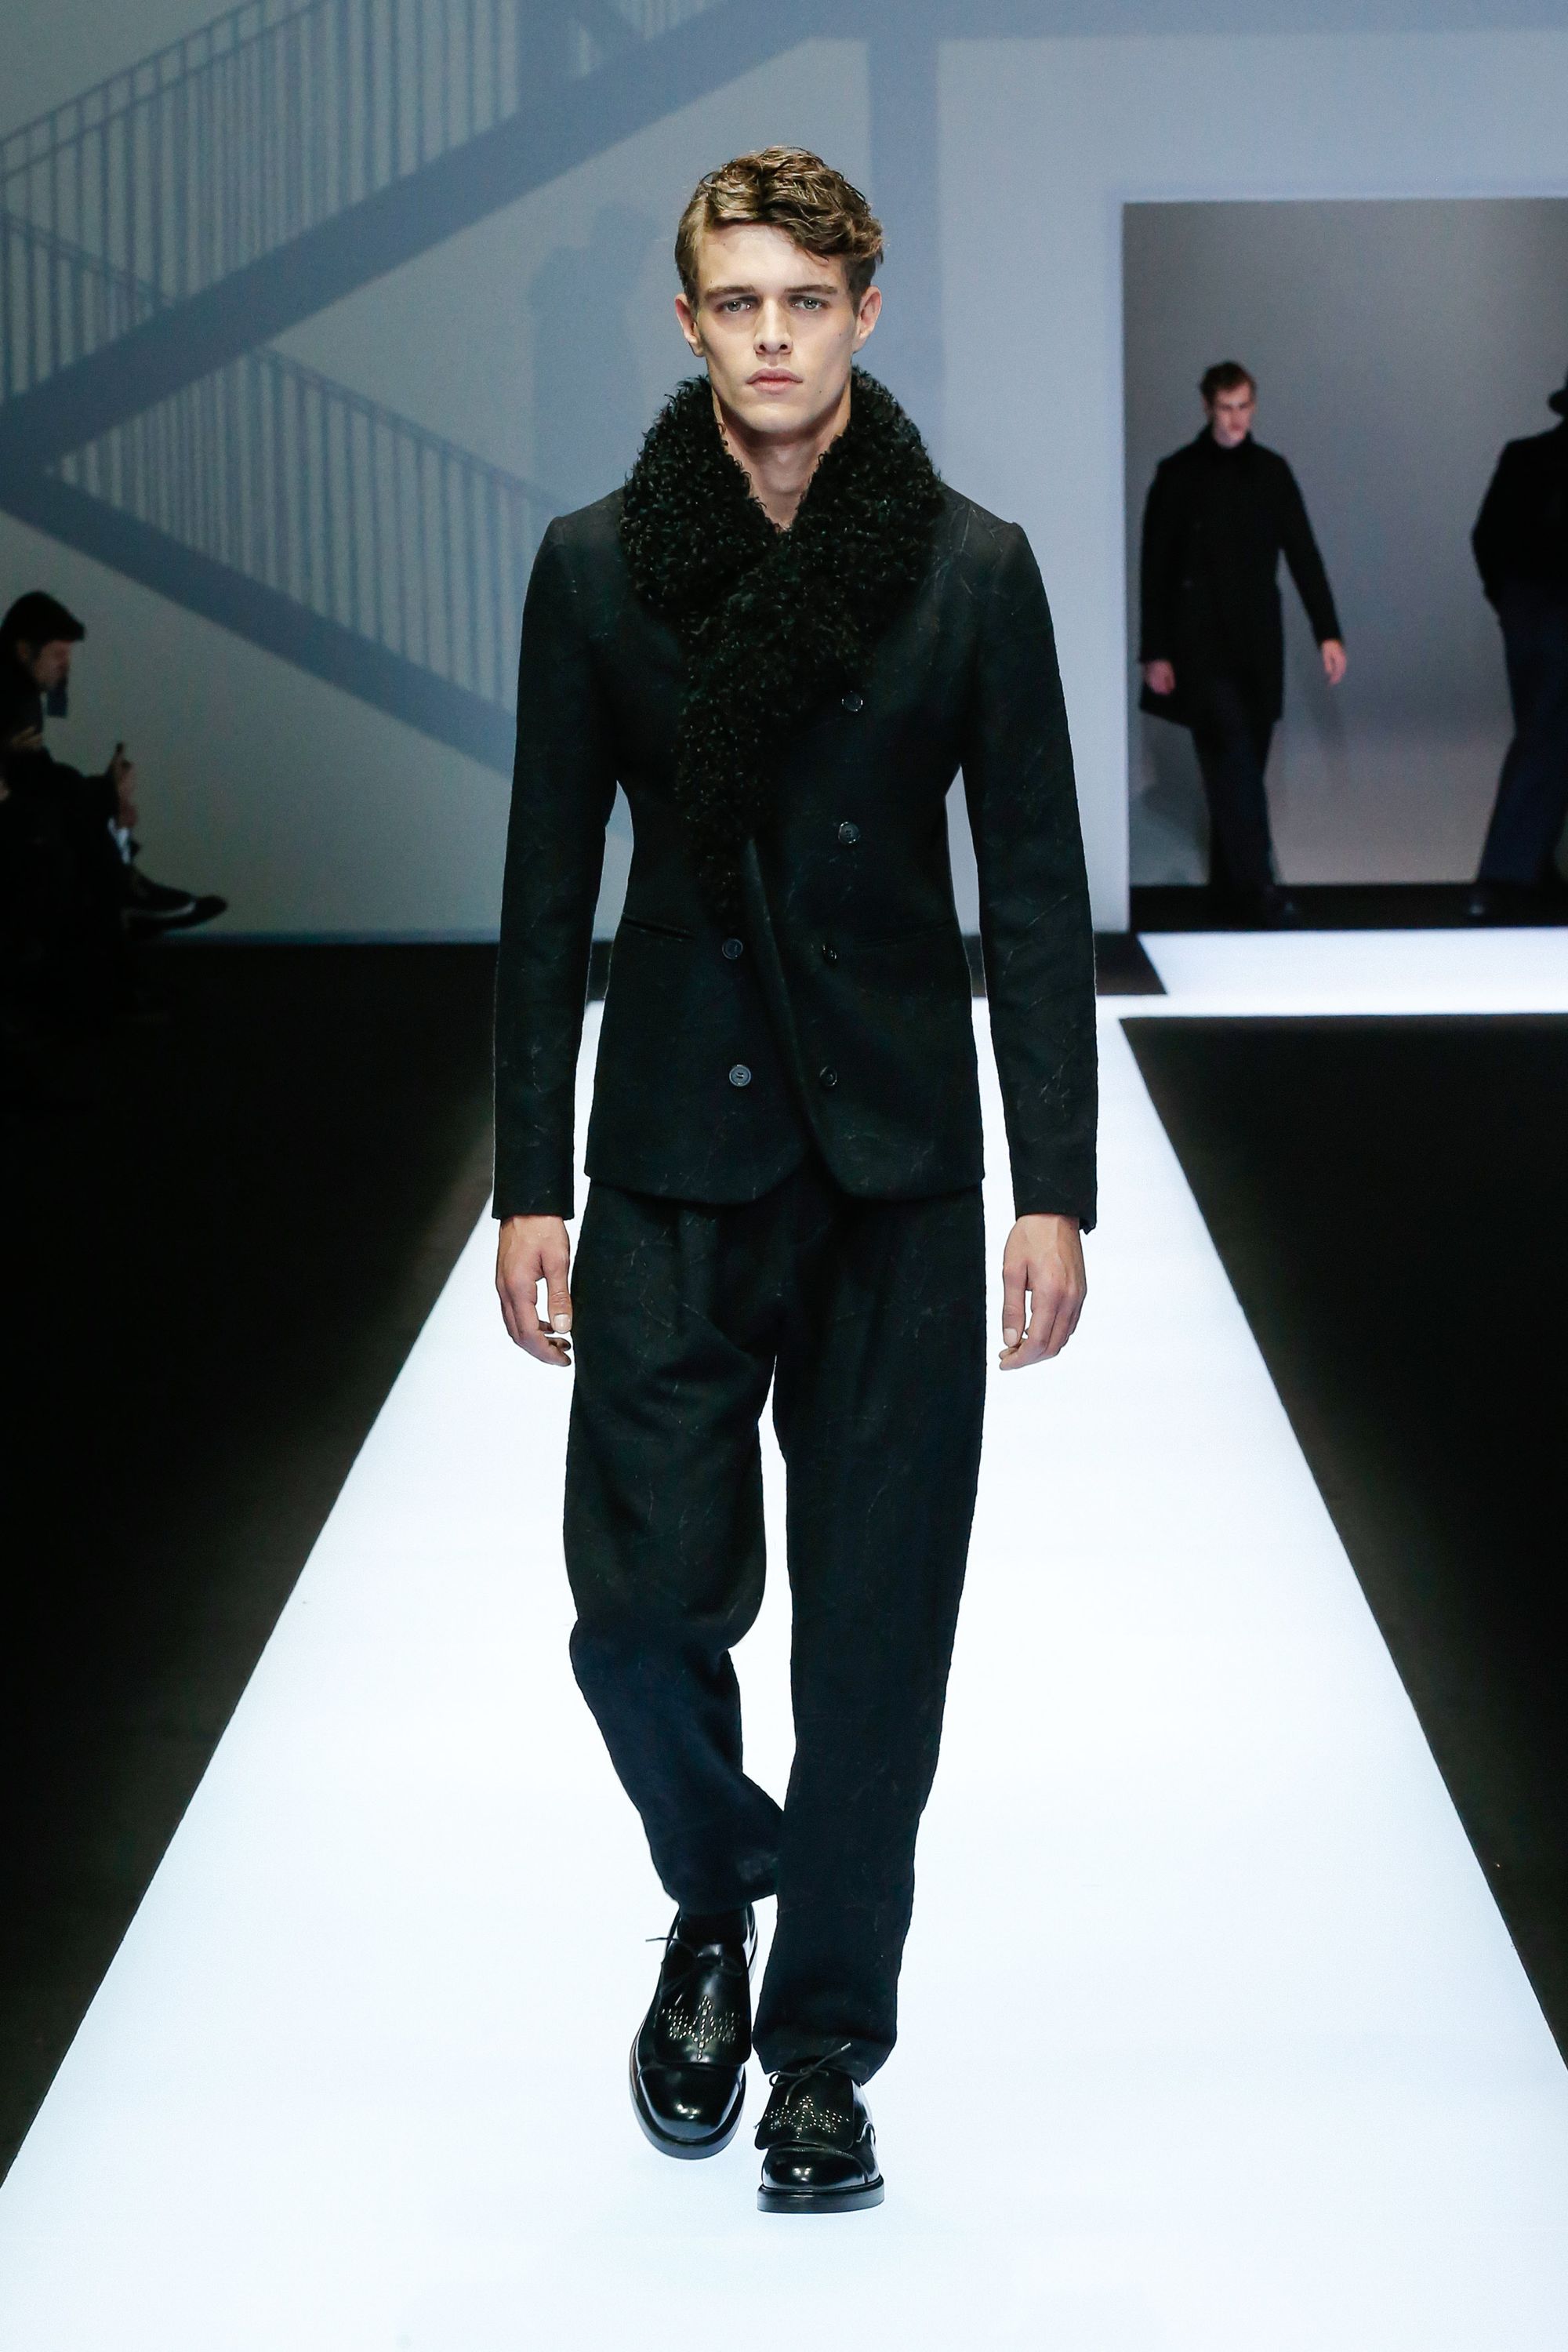 Emilio Pucci F/W 17 womenswear #41 - Tagwalk: The Fashion Search Engine